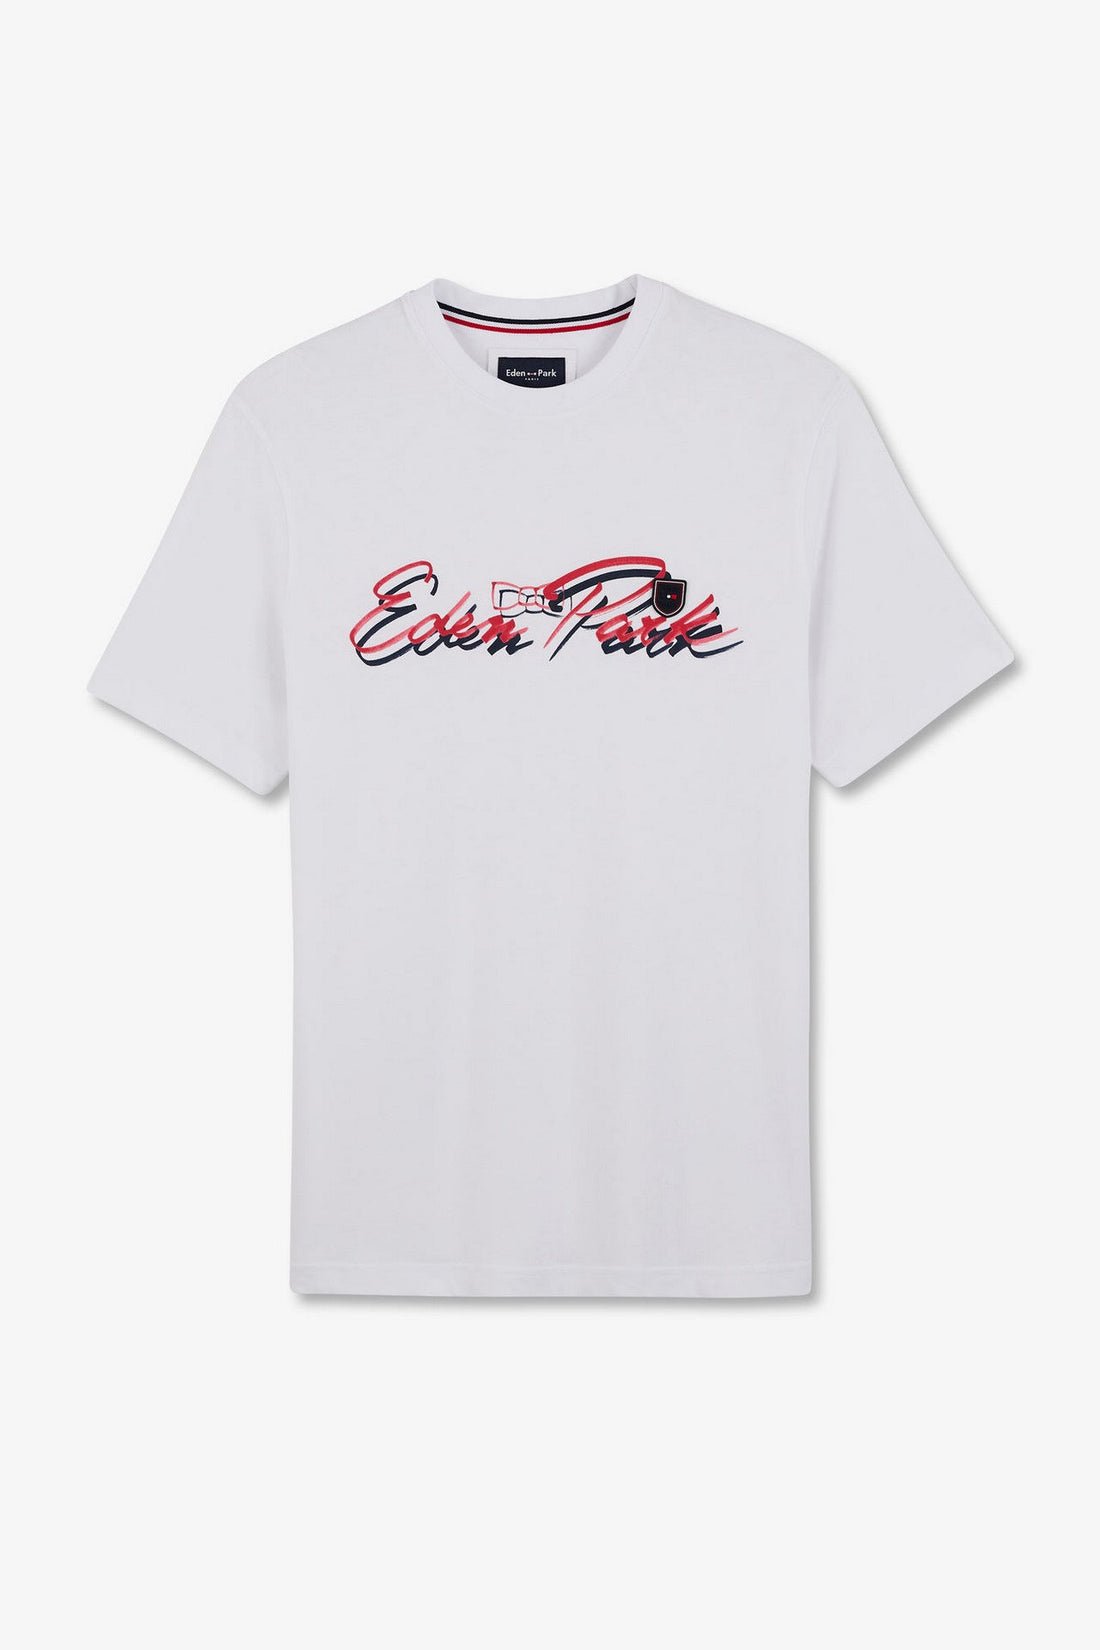 White T-Shirt With Double Eden Park Lettering_E24MAITC0039_BC_02